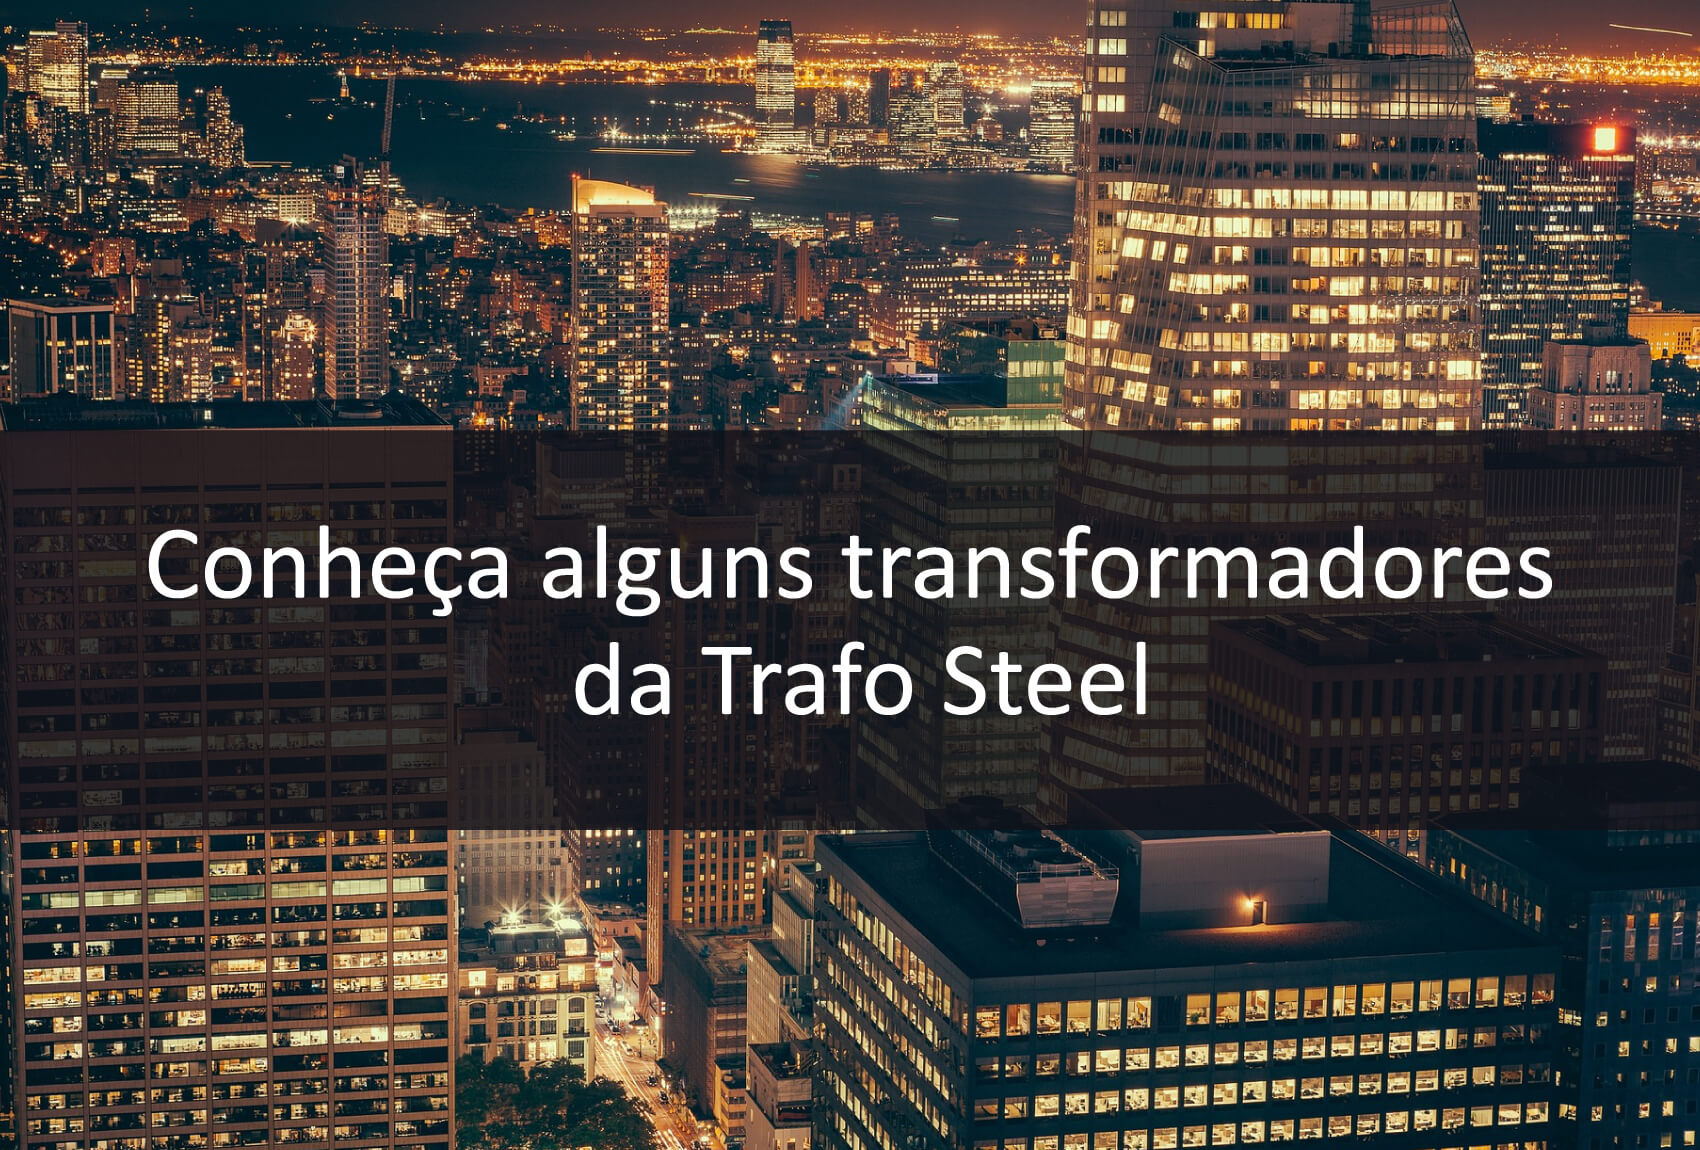 Conheça alguns dos transformadores da Trafo Steel